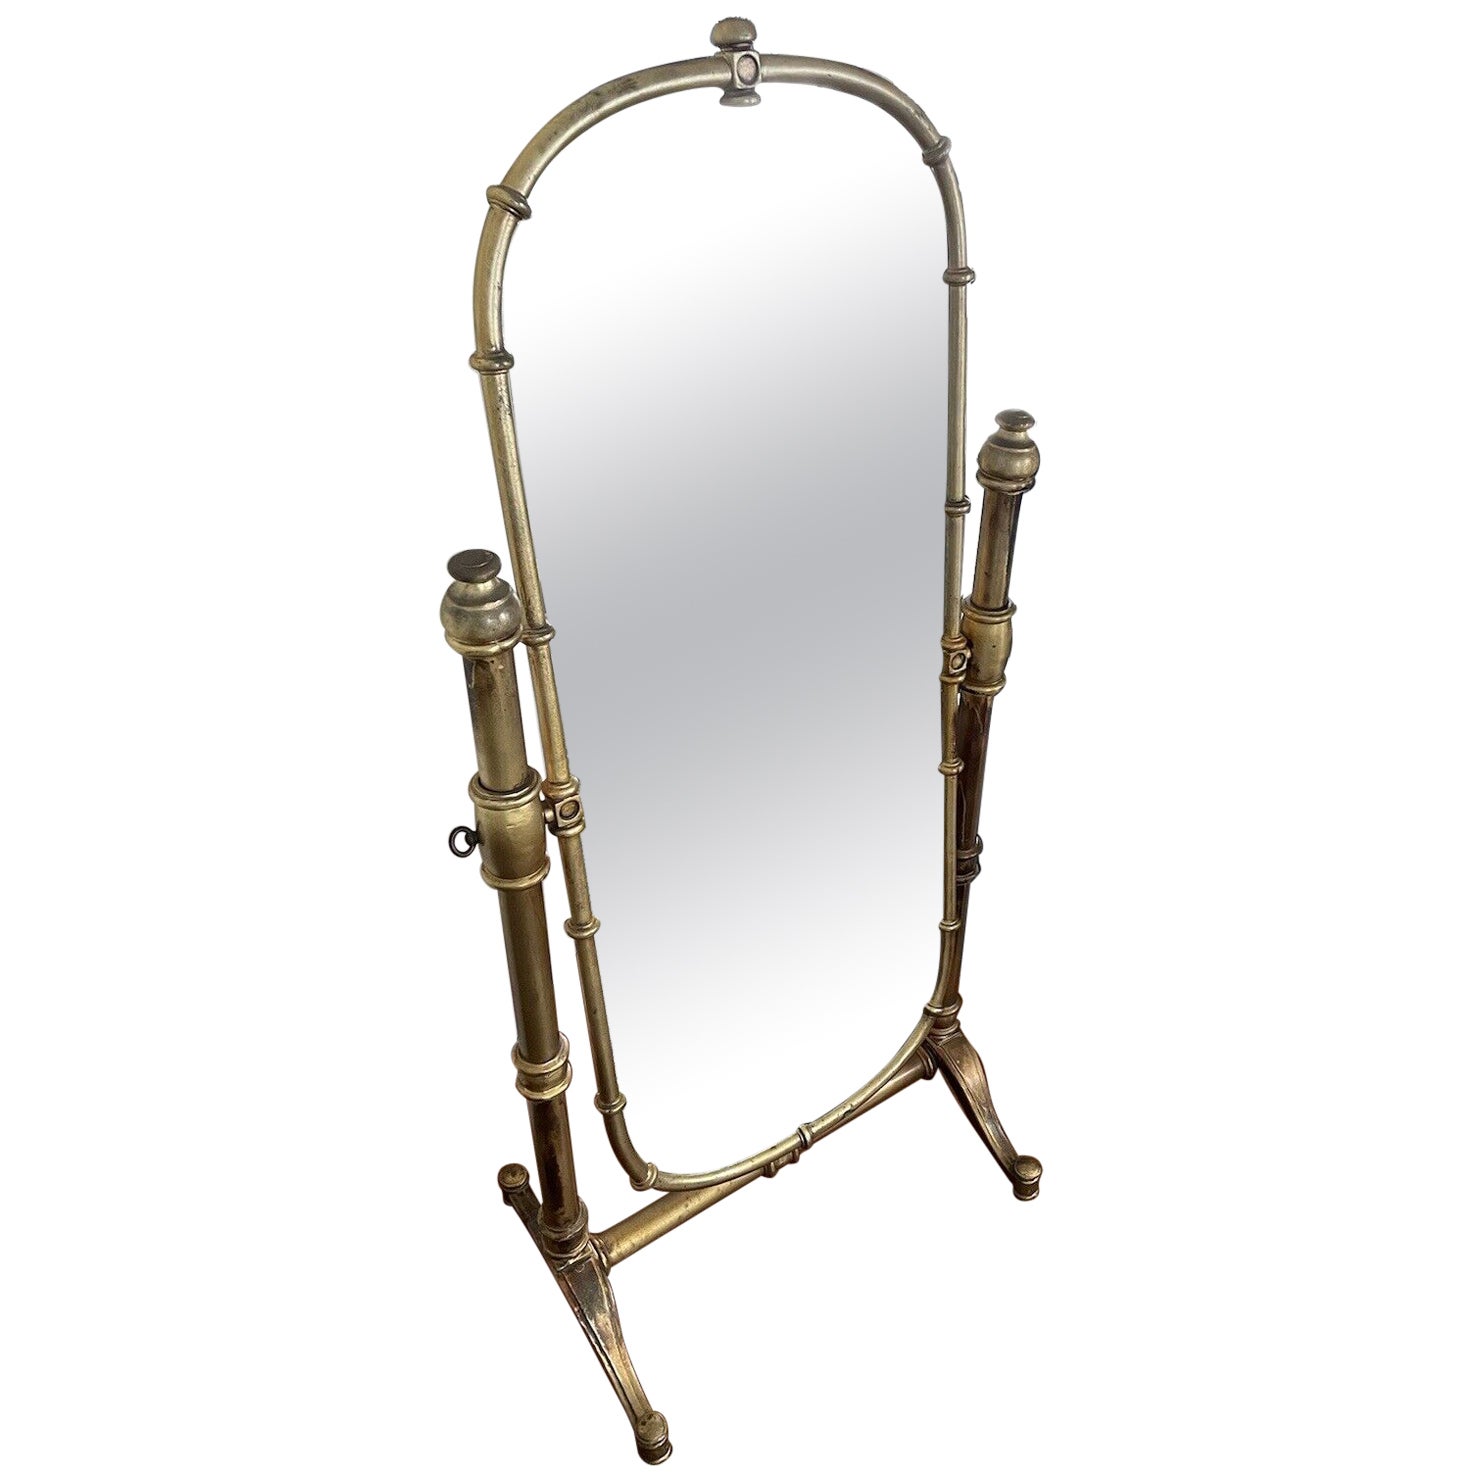 Miroir de sol vintage de style campagne florentin peint en faux bambou